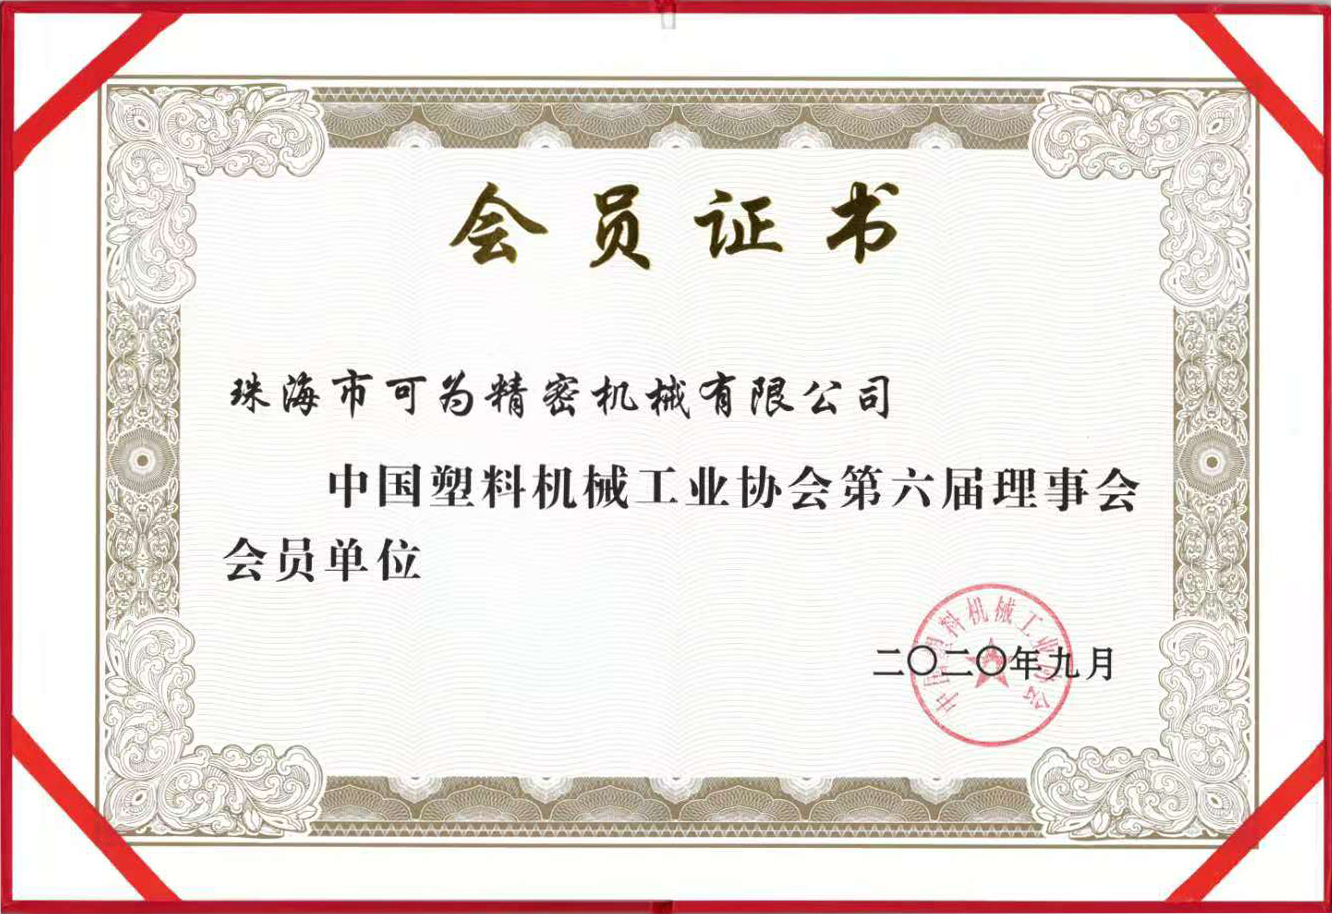 中国塑料机械工业协会第六届理事会会员单位证书